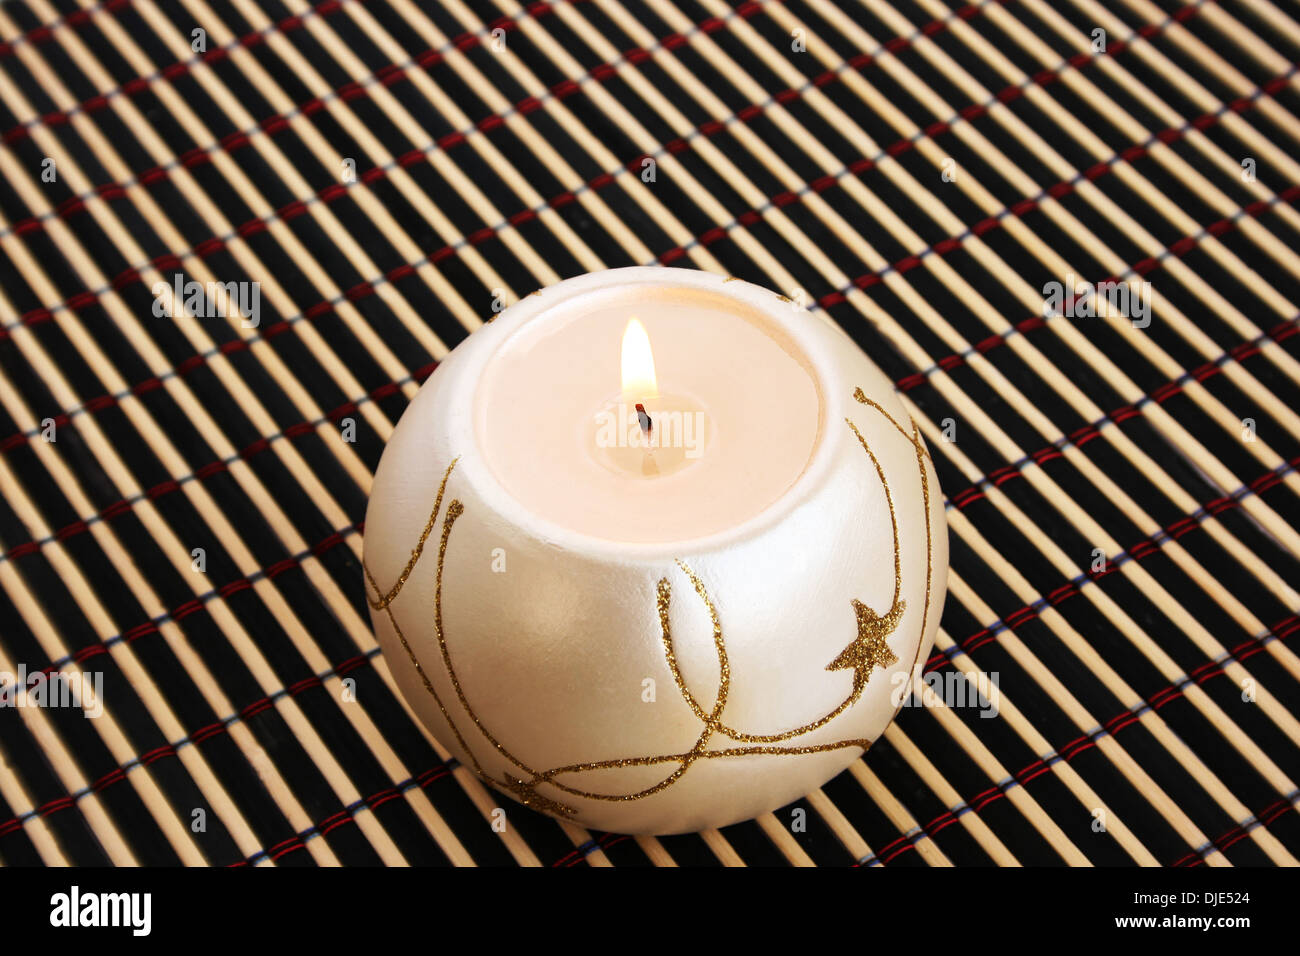 Burning candle isolated on bamboo background. Stock Photo